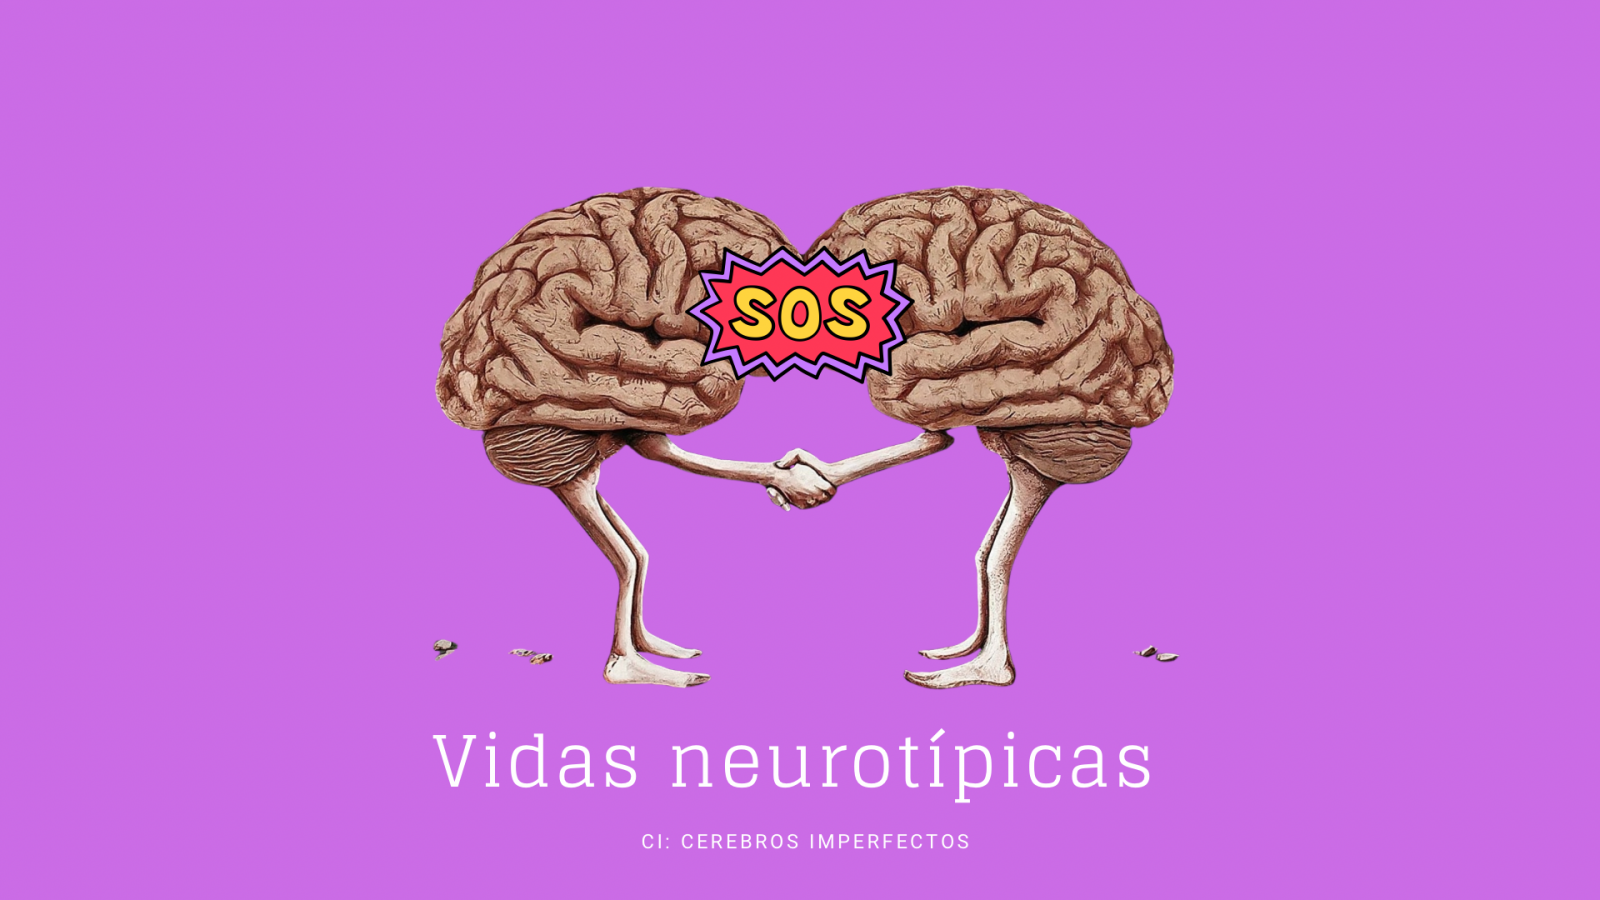 Cerebros imperfectos - Vidas Neurotpicas: El neurotpico en el mundo de la neurodivergencia - Escuchar ahora